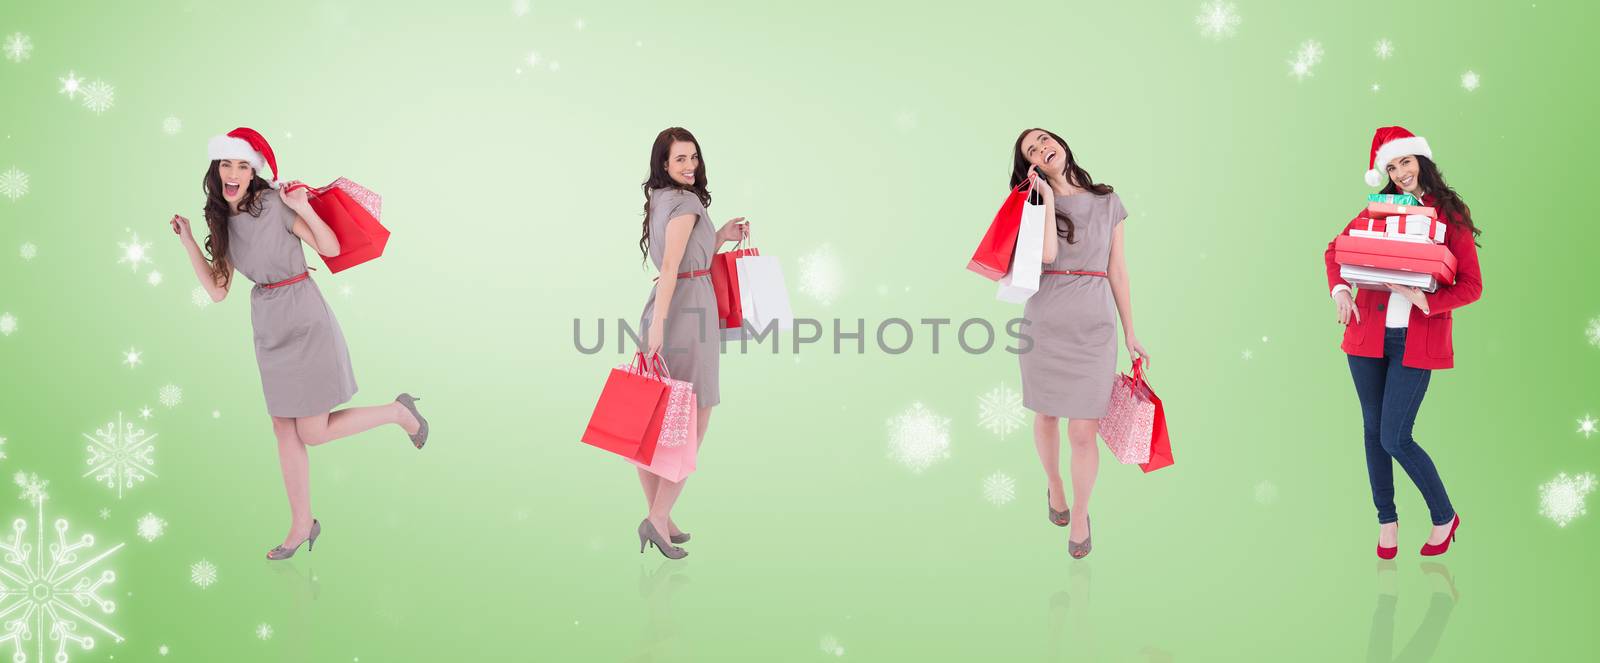 Composite image of different elegant brunettes against green vignette